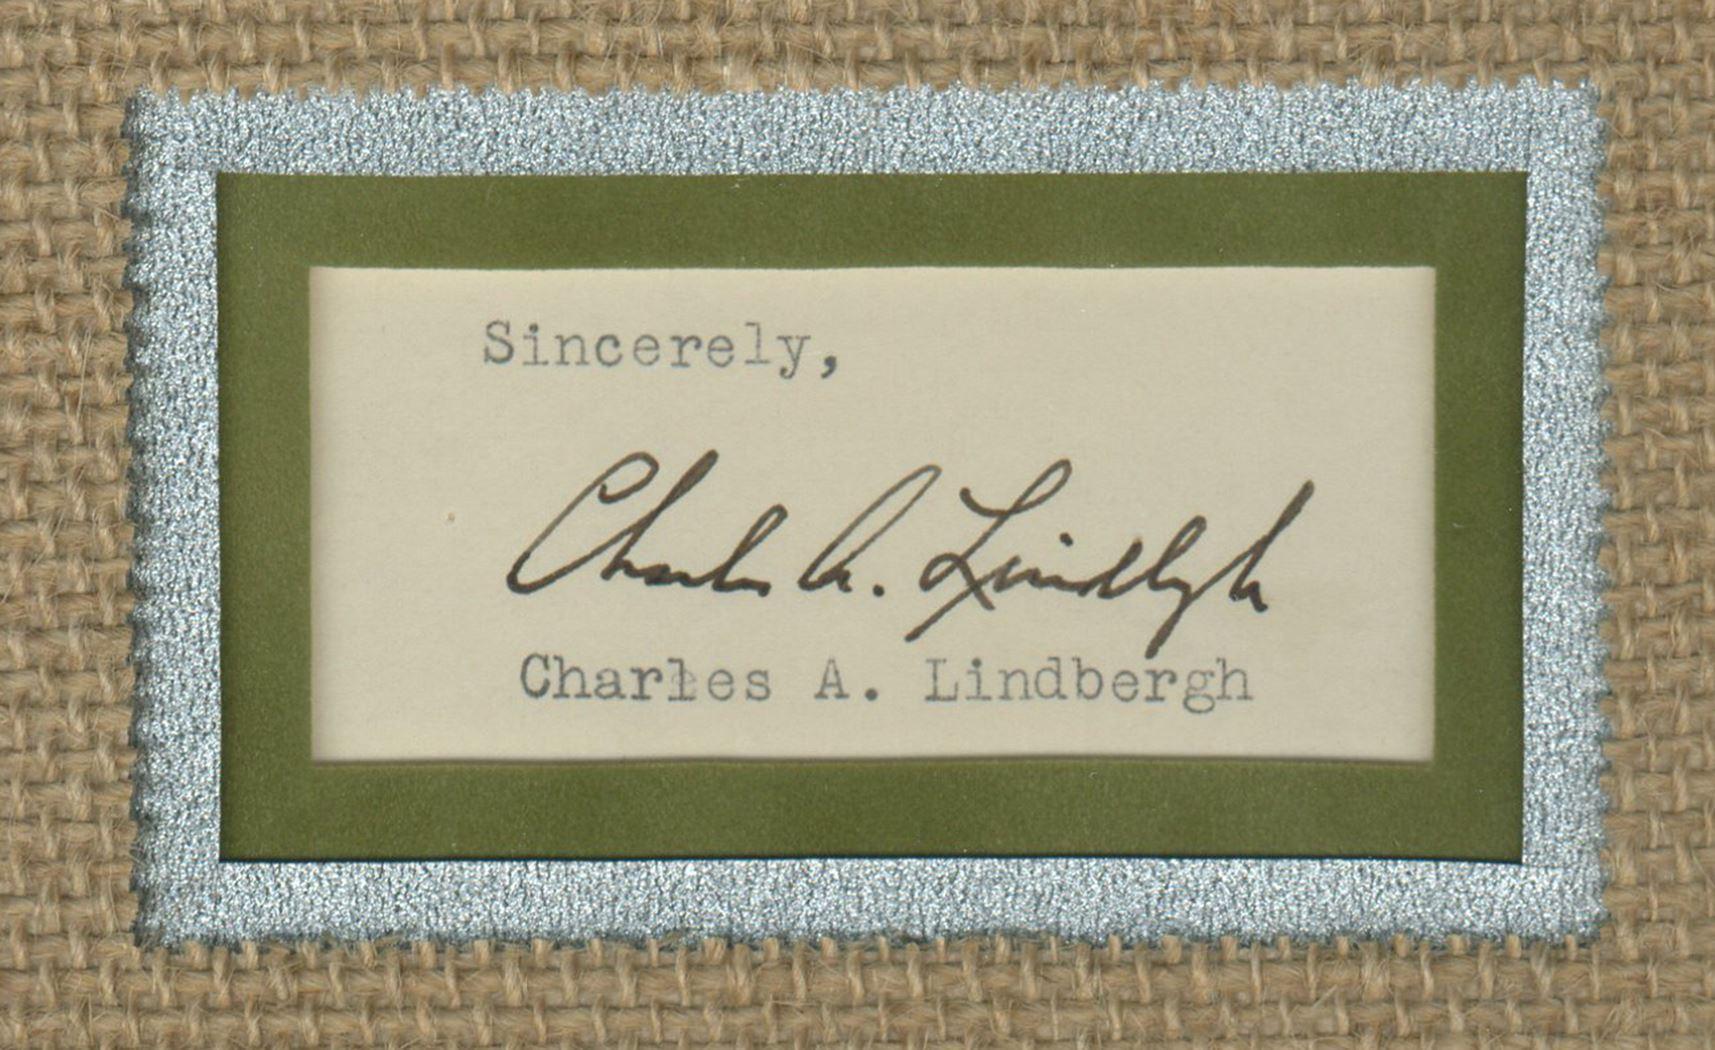 Dies ist eine schöne Ausstellung, die Signatur des berühmten amerikanischen Fliegermeisters Charles A. Lindbergh (1902-1974) zeigt. Lindbergh signierte die Seite, jetzt geschliffen, mit schwarzer Tinte als „Charles A. Lindbergh“. Seine Unterschrift